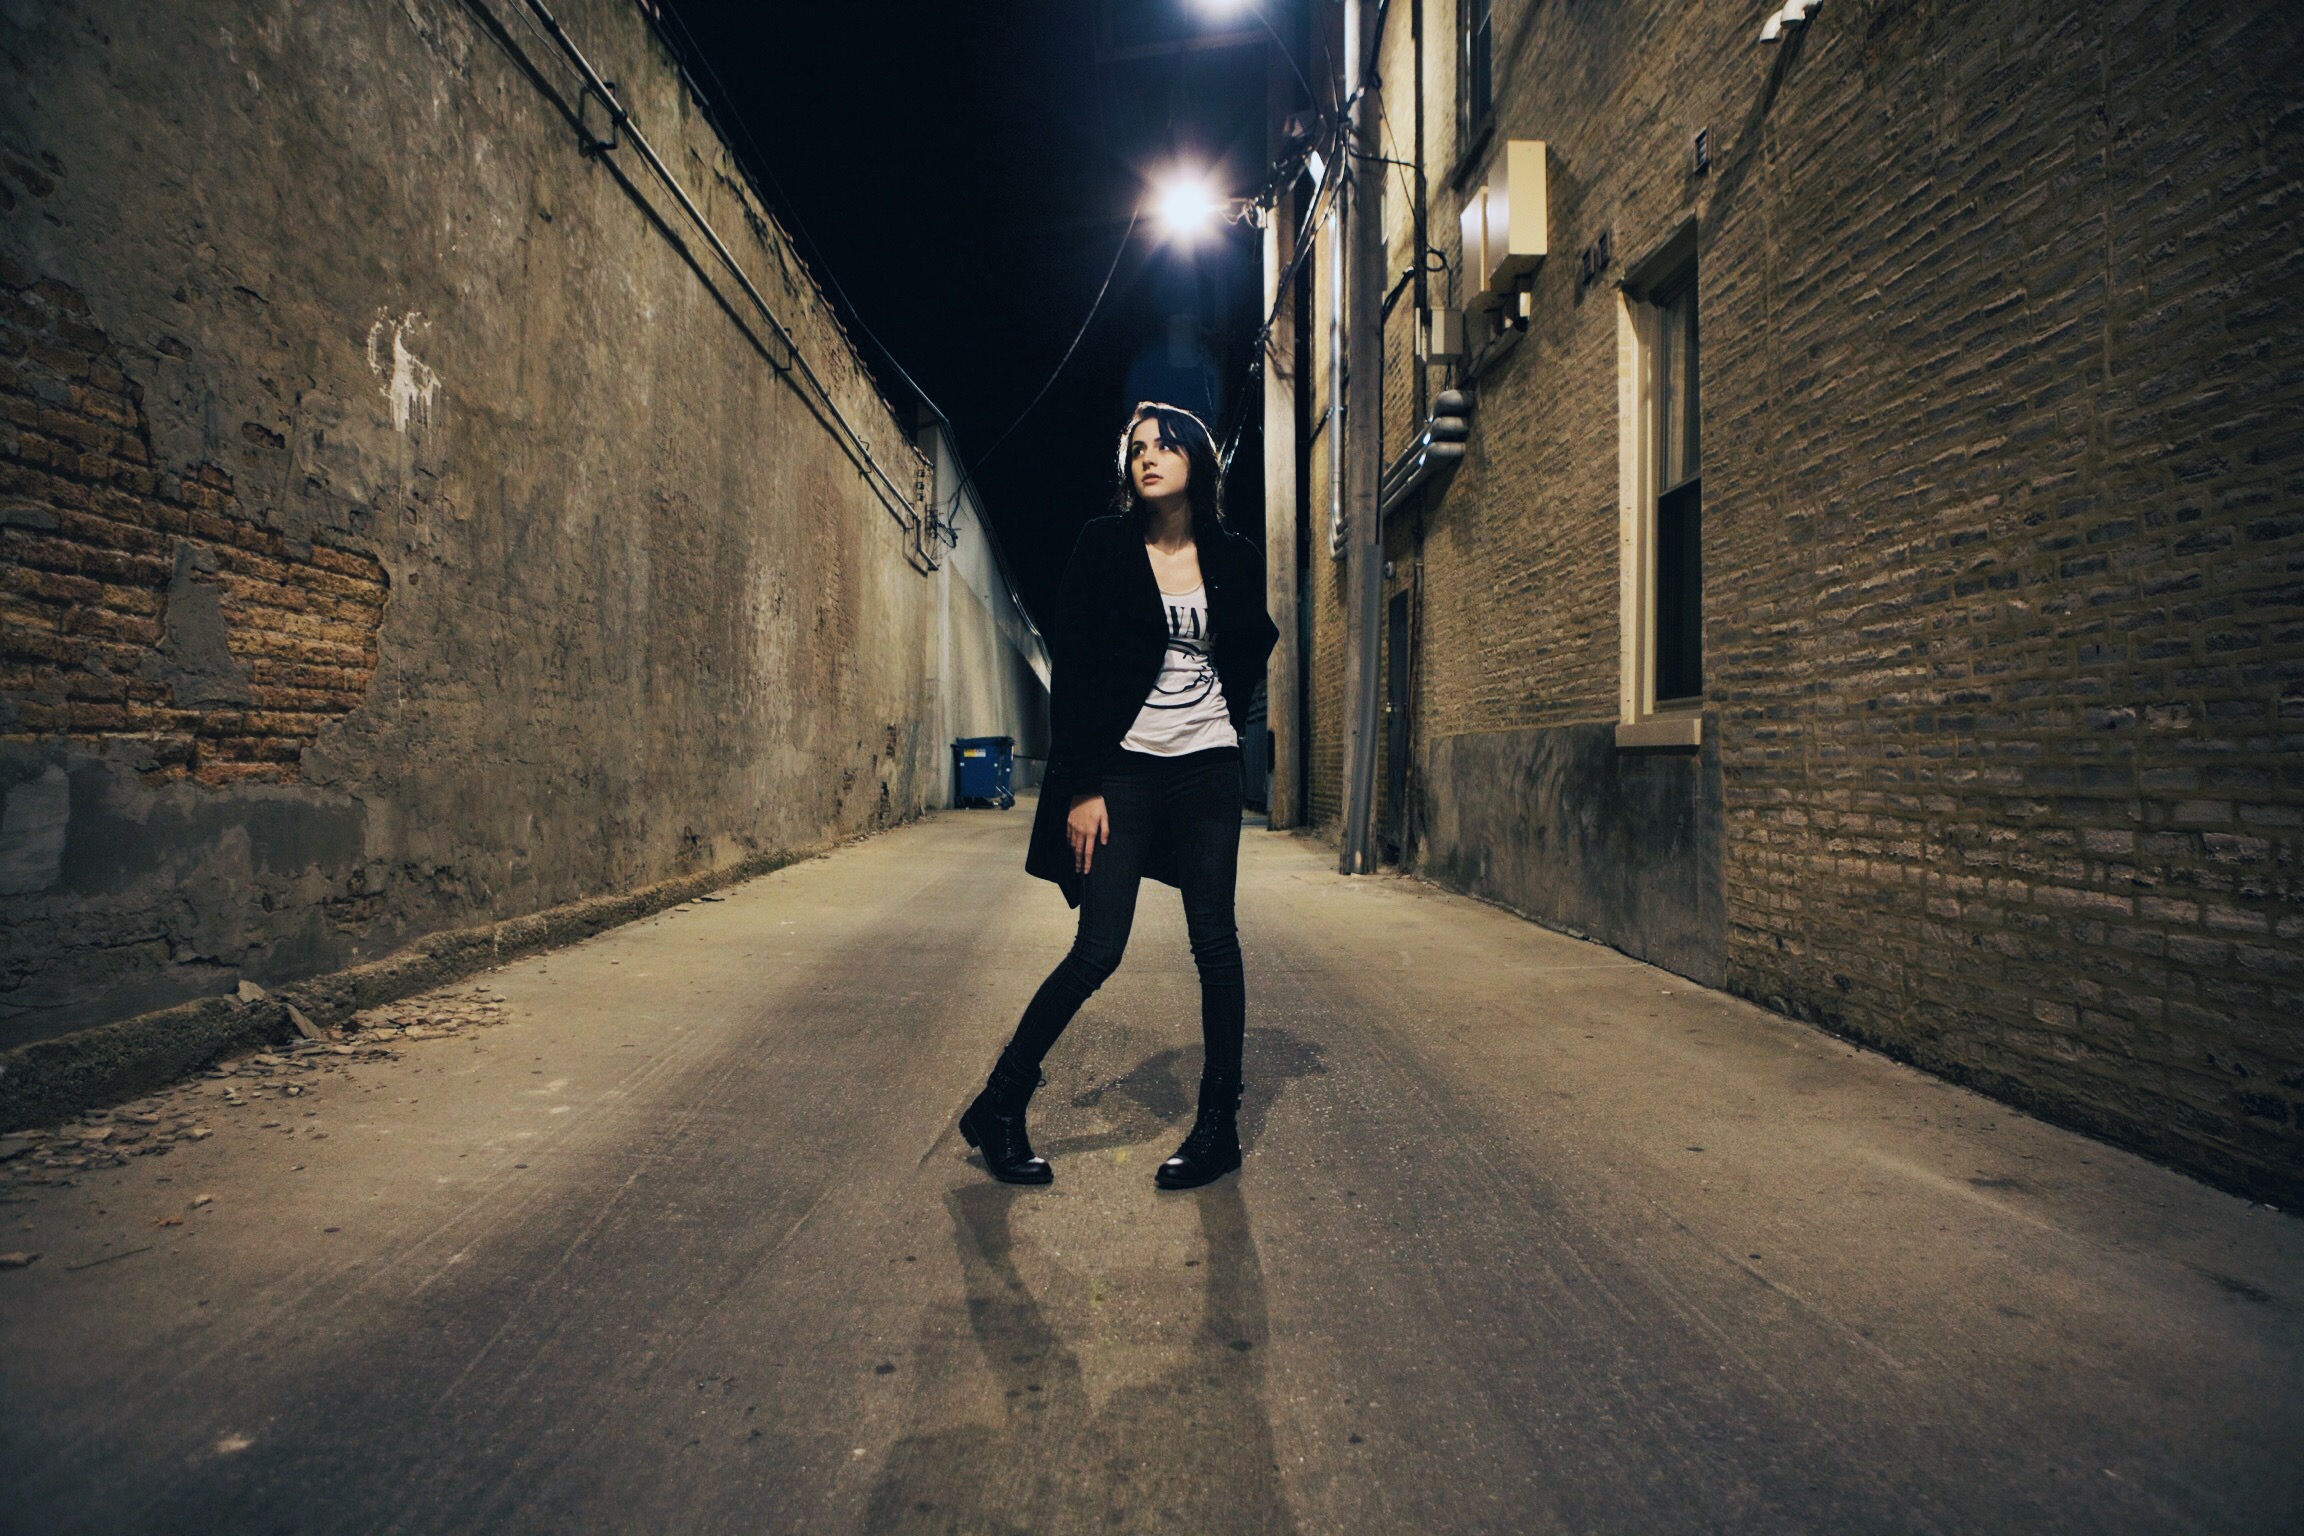 model in alleyway at night